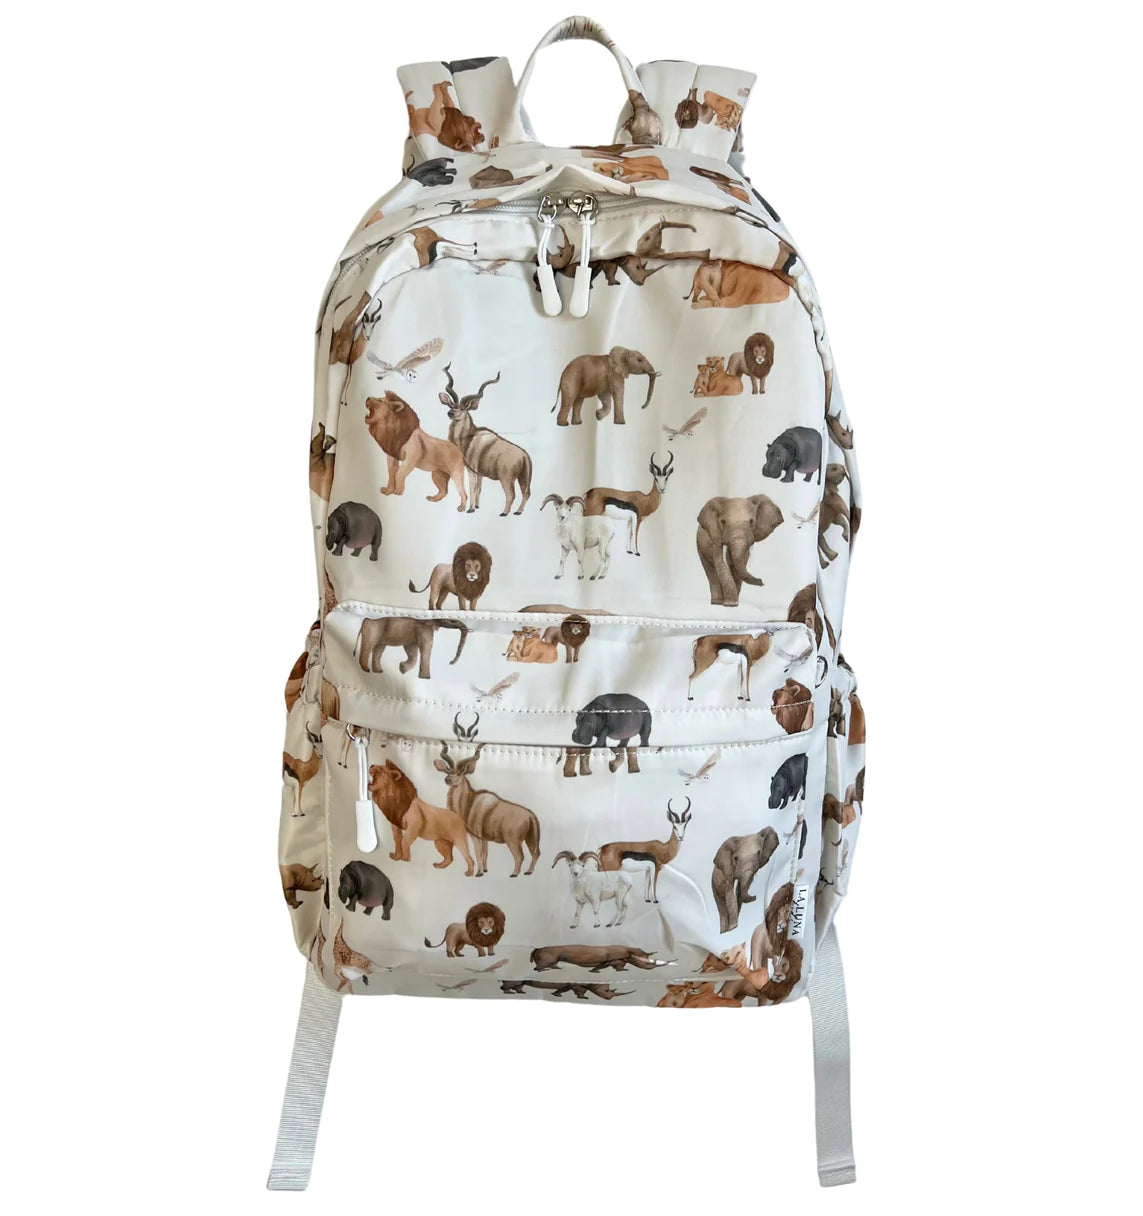 Backpack - Safari